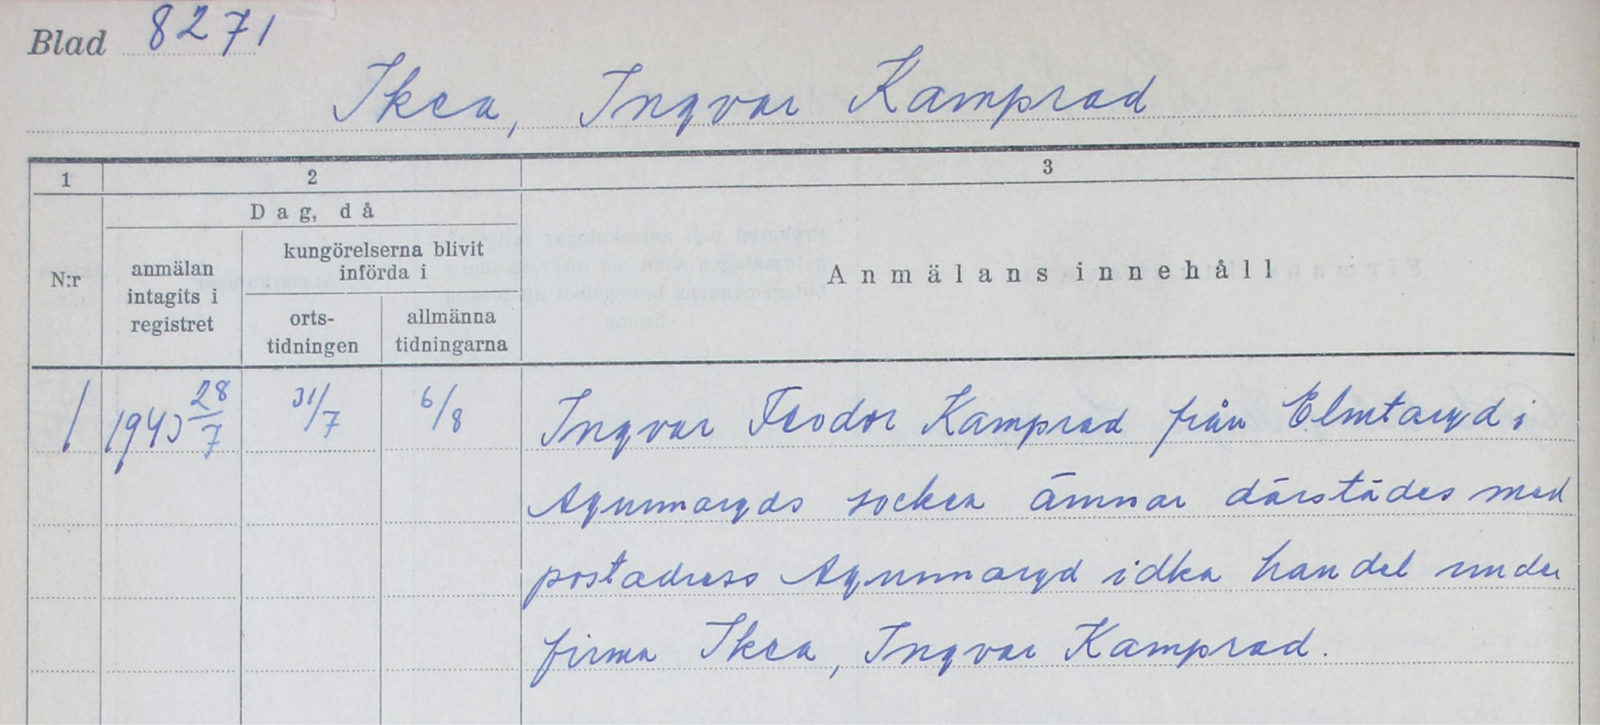 Formulaire rempli à l’encre bleue, Ingvar Kamprad demande la création de l’entreprise Ikéa à Elmtaryd, Agunnaryd, 1940.